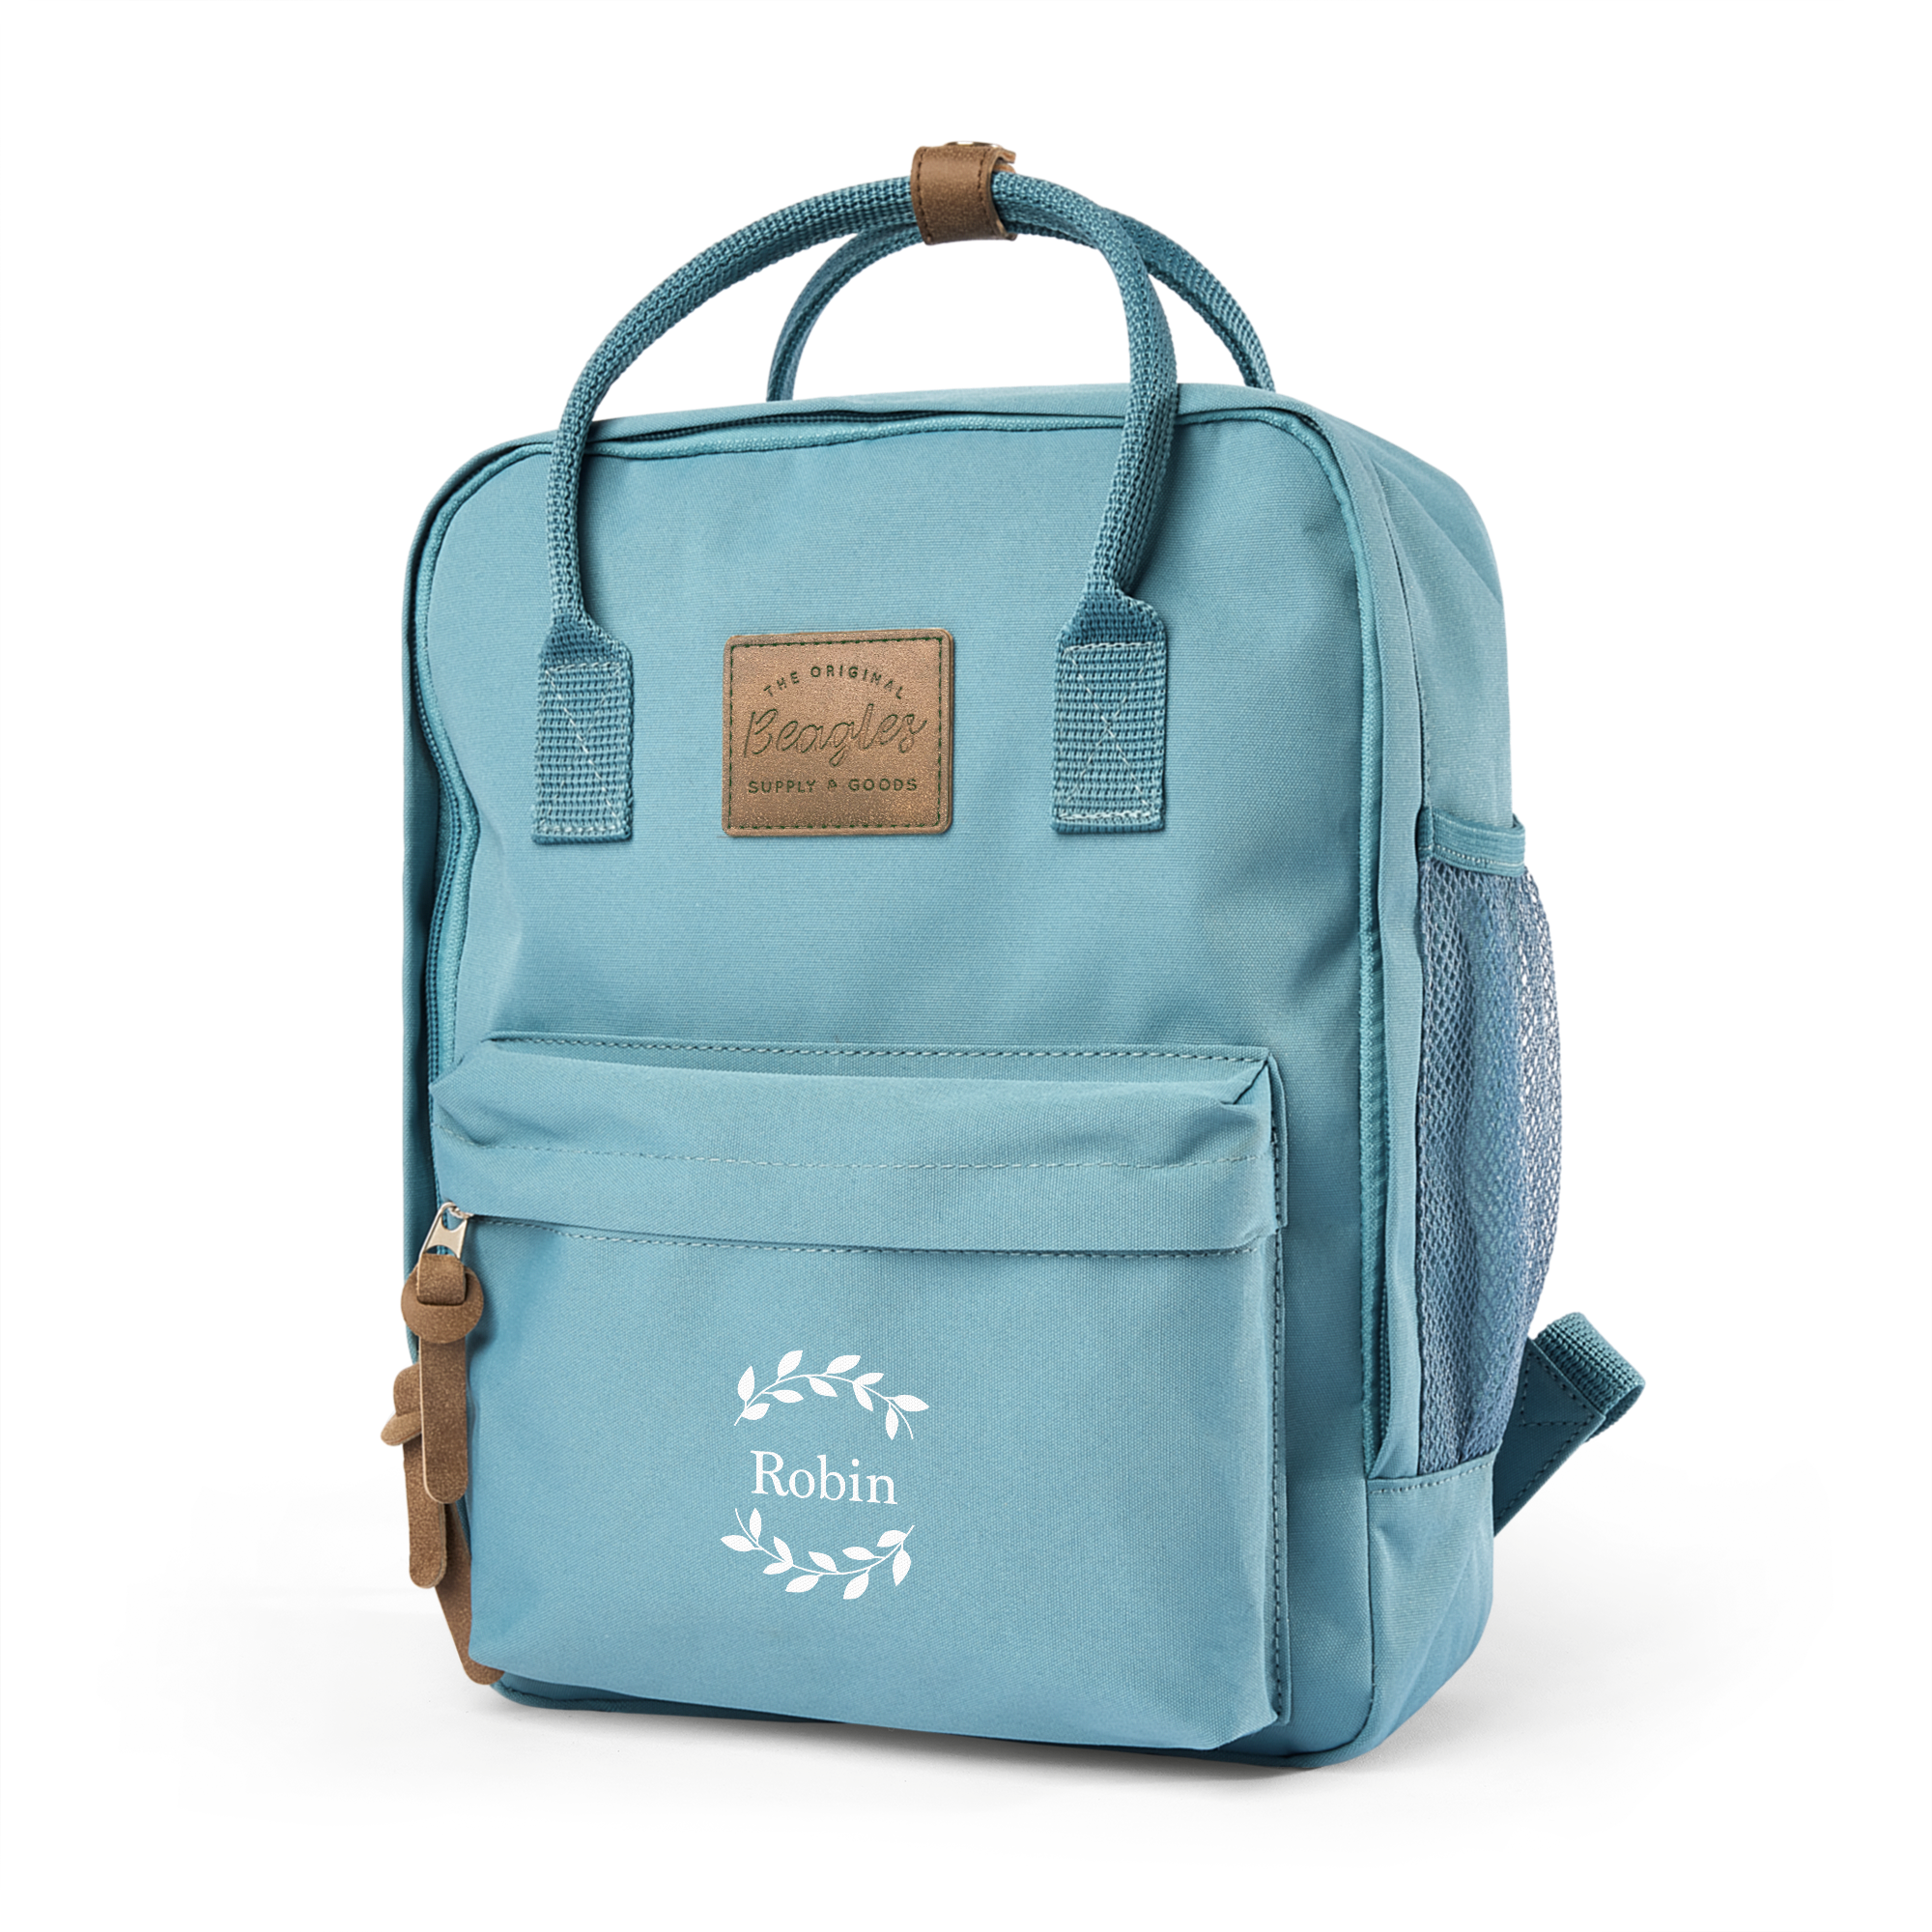 Personalizovaný batoh se jménem - Modrý